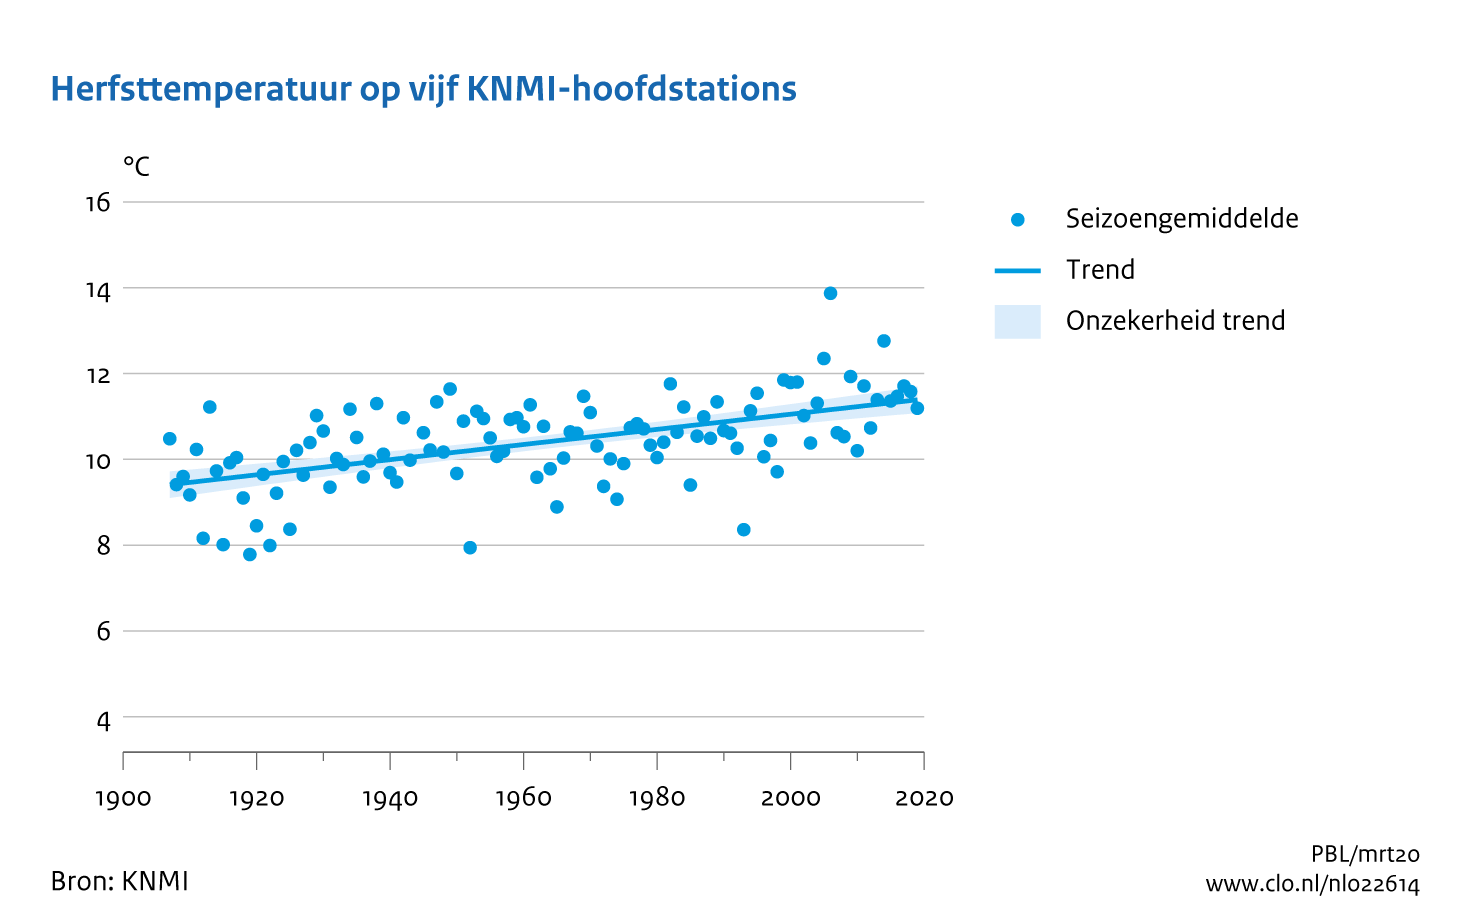 Figuur herfst temperatuur midden Nederland. In de rest van de tekst wordt deze figuur uitgebreider uitgelegd.